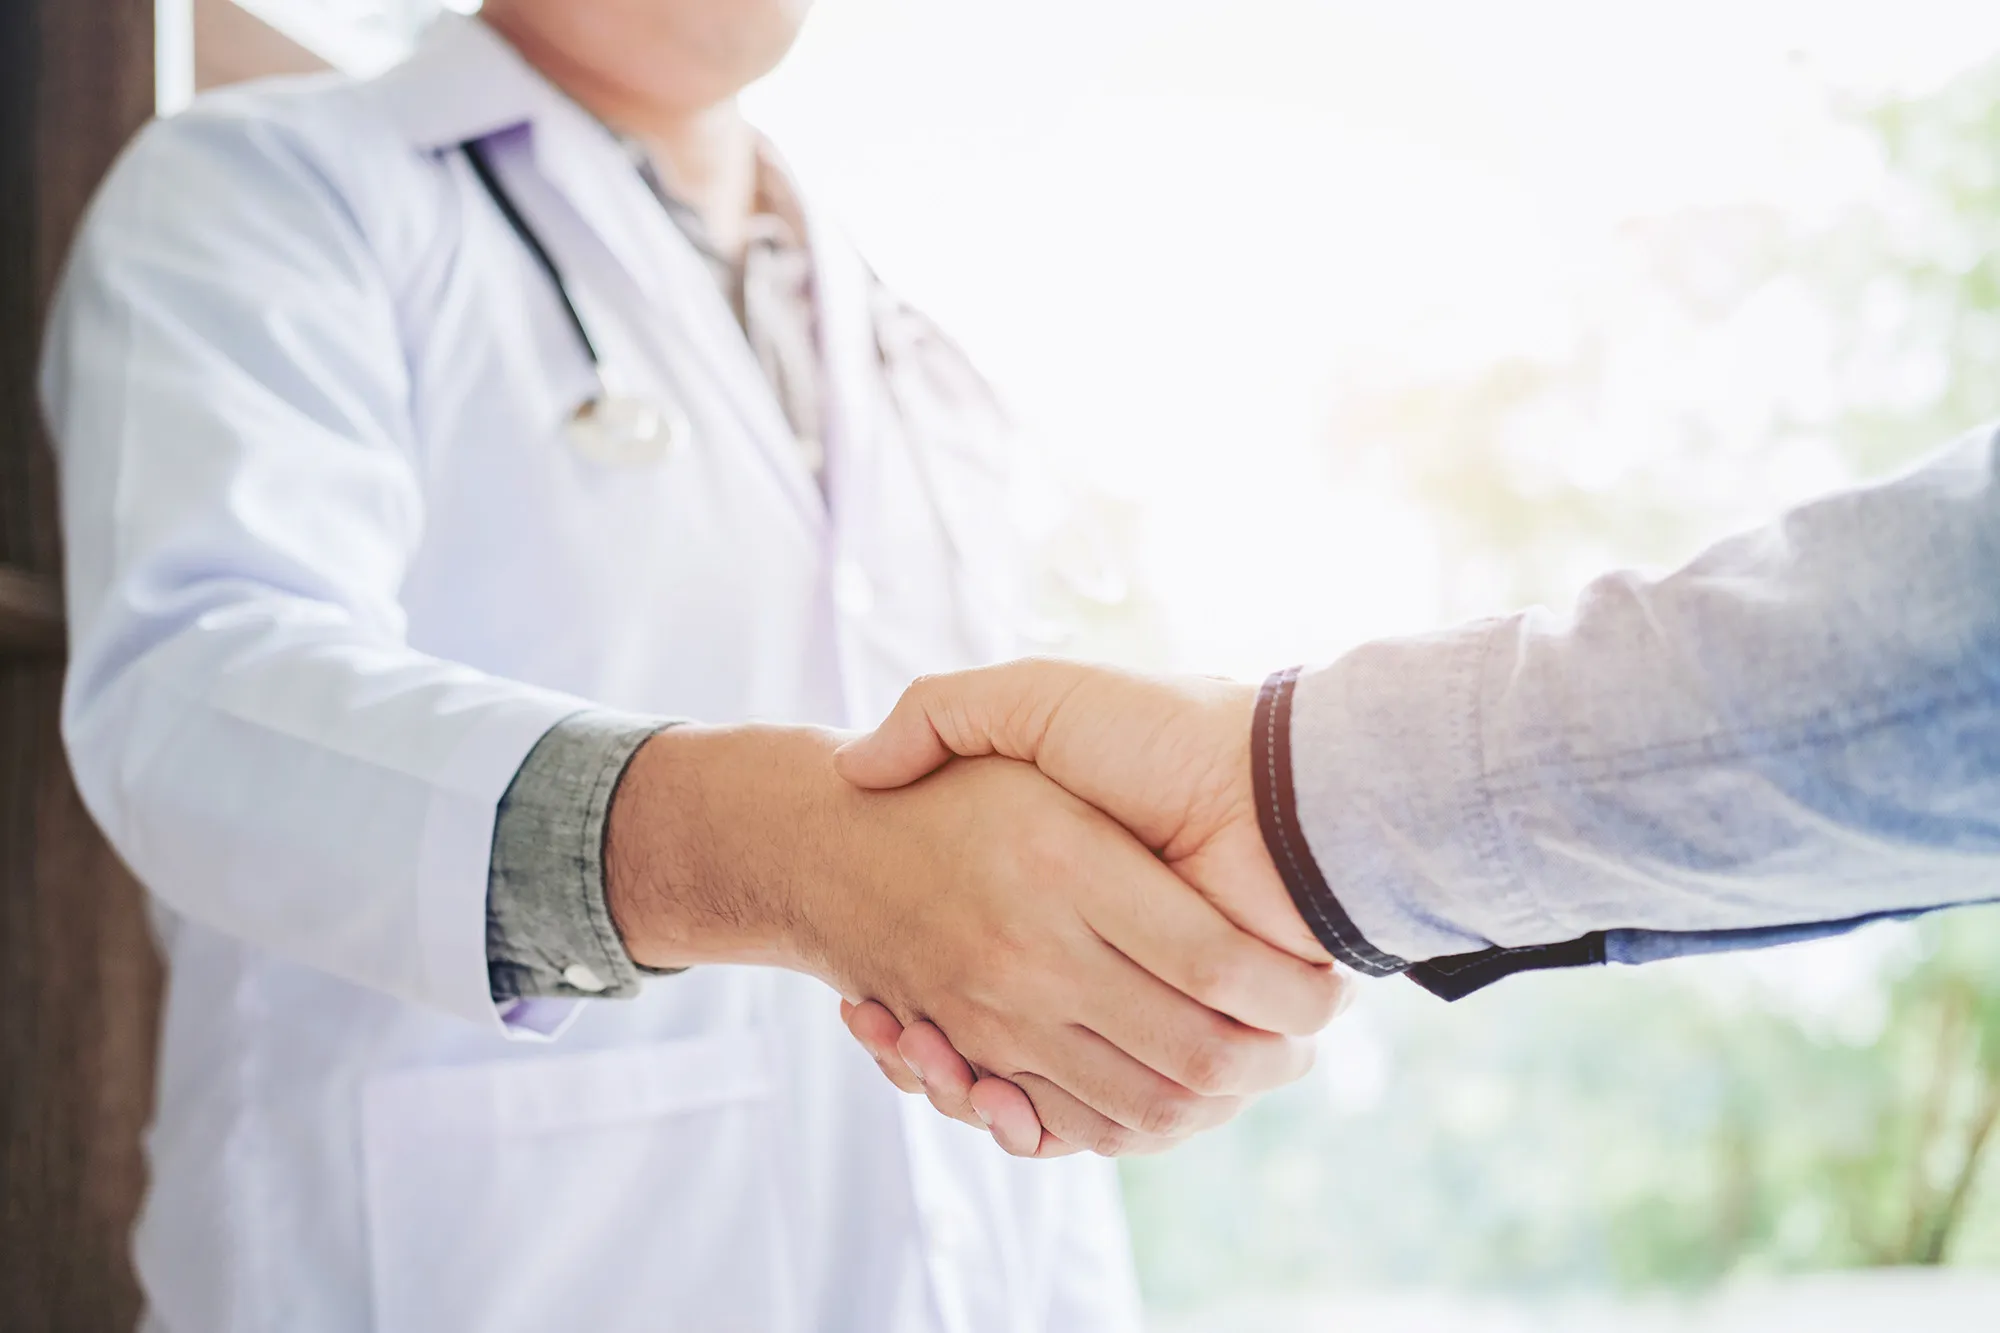 88 med - doctors shaking hands